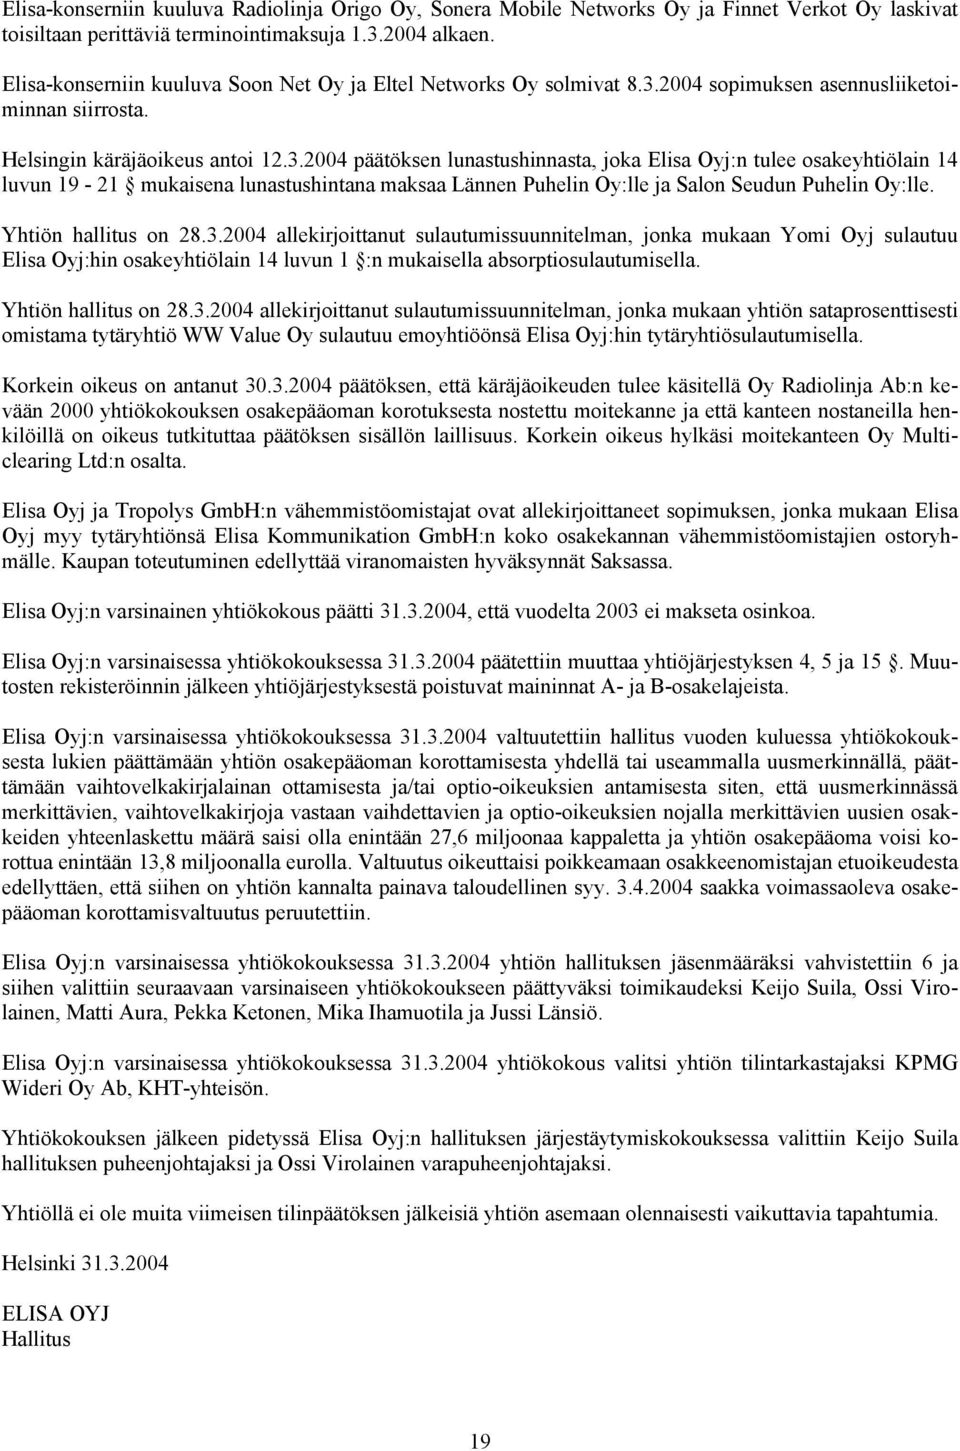 2004 sopimuksen asennusliiketoiminnan siirrosta. Helsingin käräjäoikeus antoi 12.3.